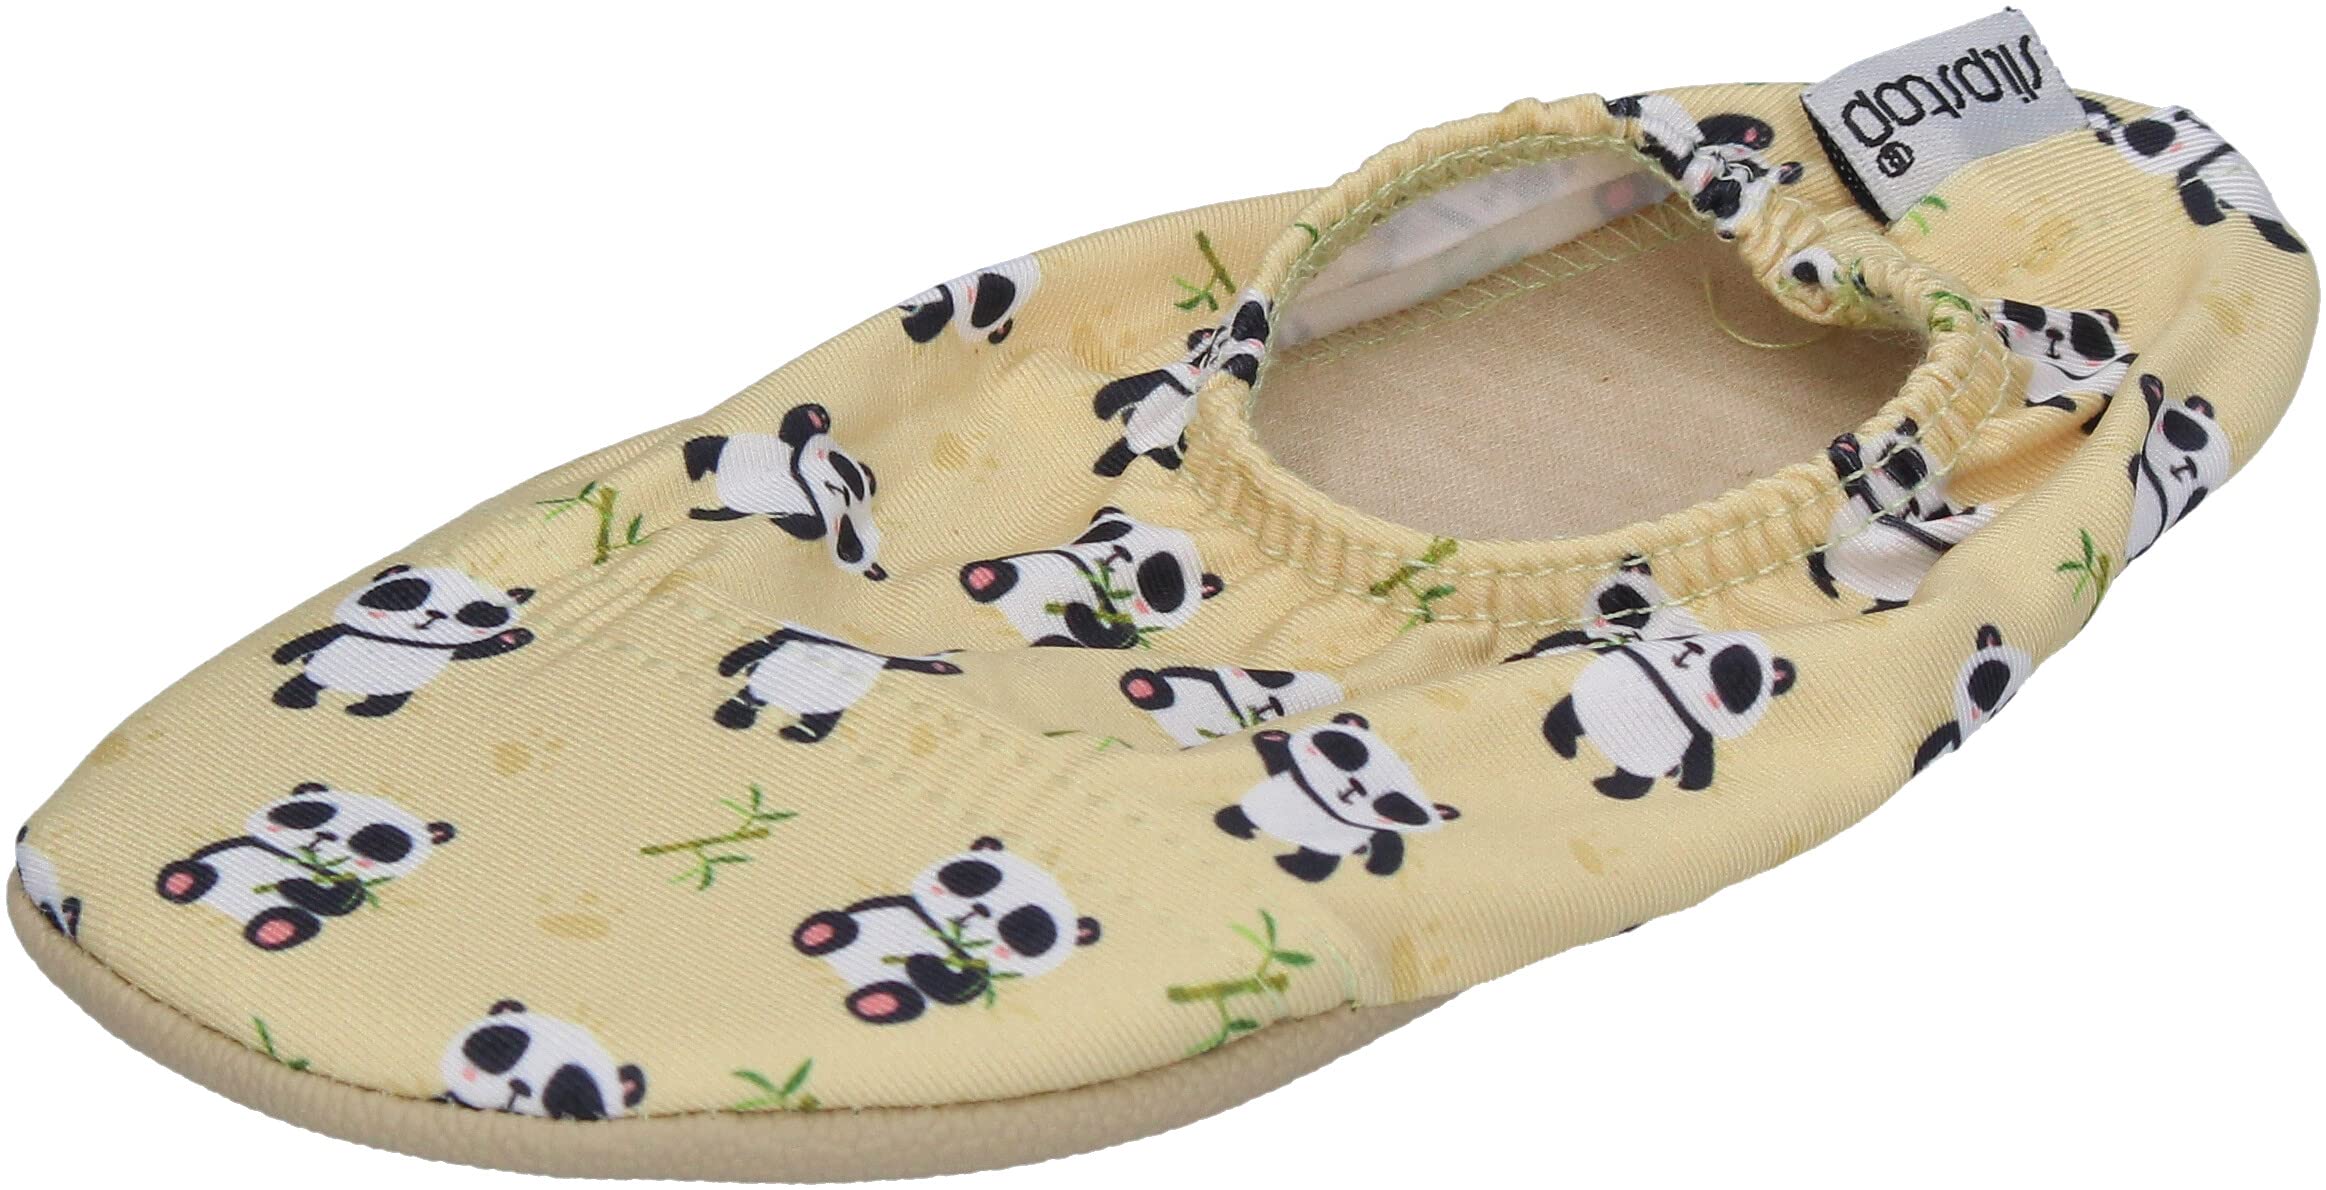 Slipstop Kinder Hausschuhe Badeschuhe Ola Yellow Panda, Größe:24/26 EU